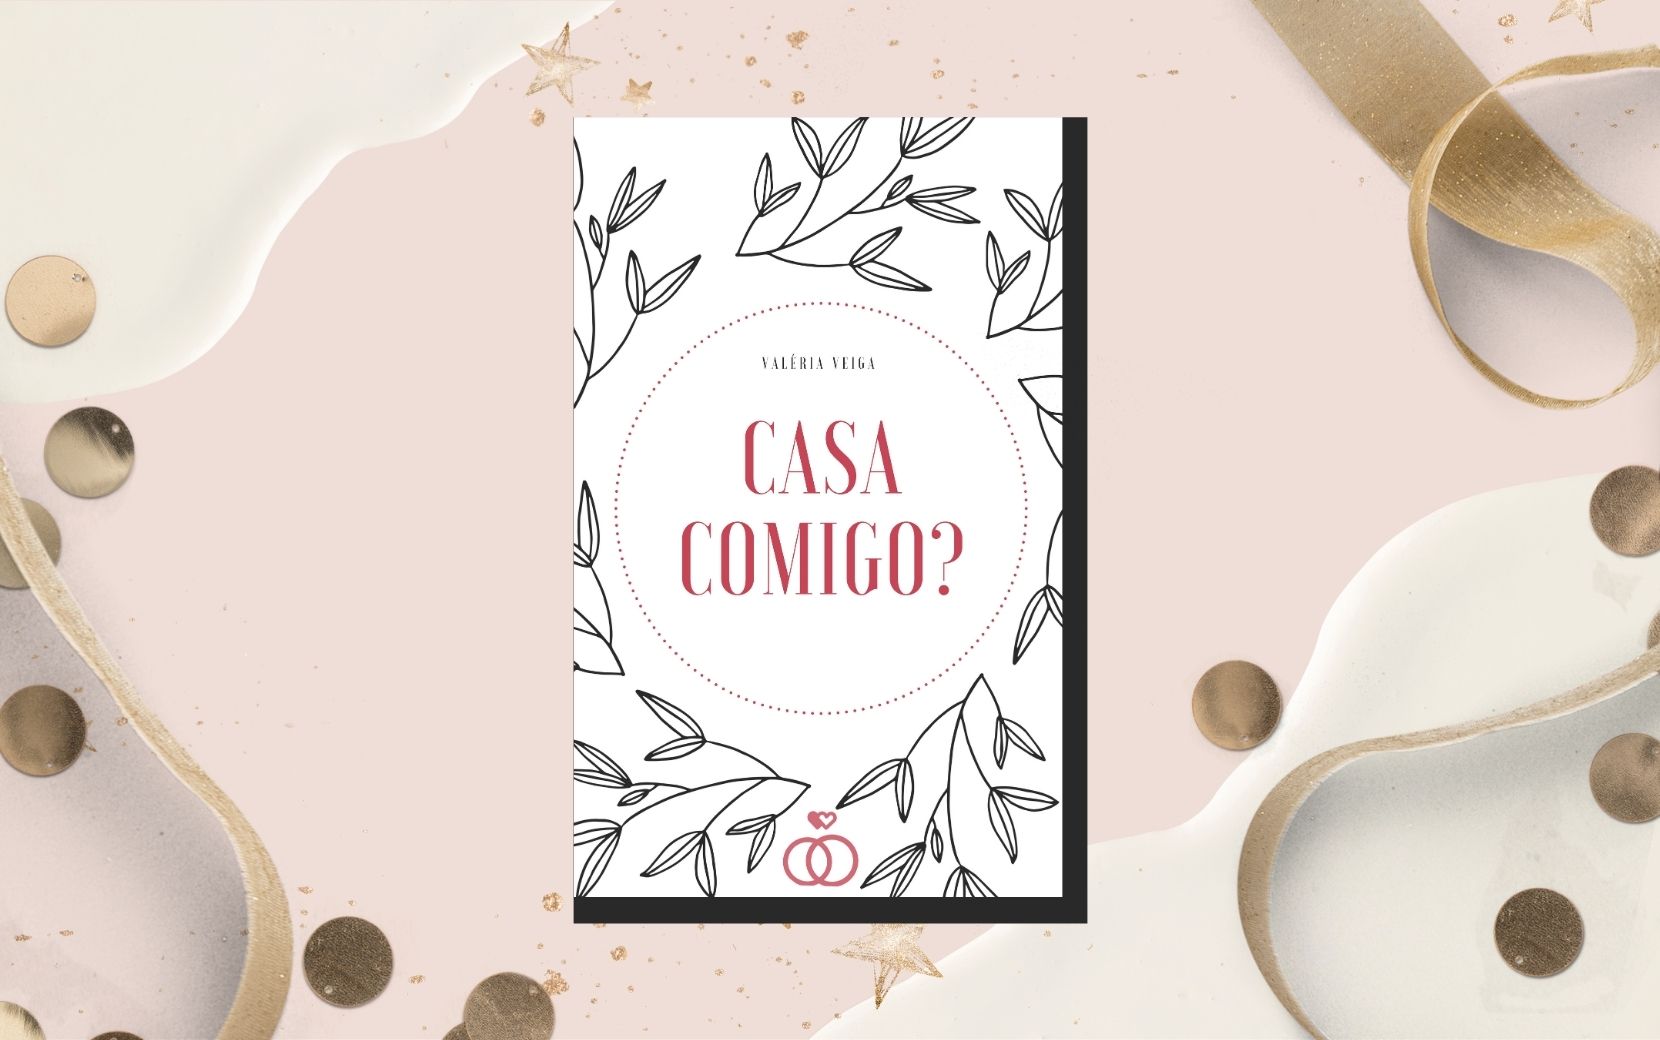 Exclusiva: Valéria Veiga fala sobre seu novo livro, a comédia romântica picante "Casa Comigo?"